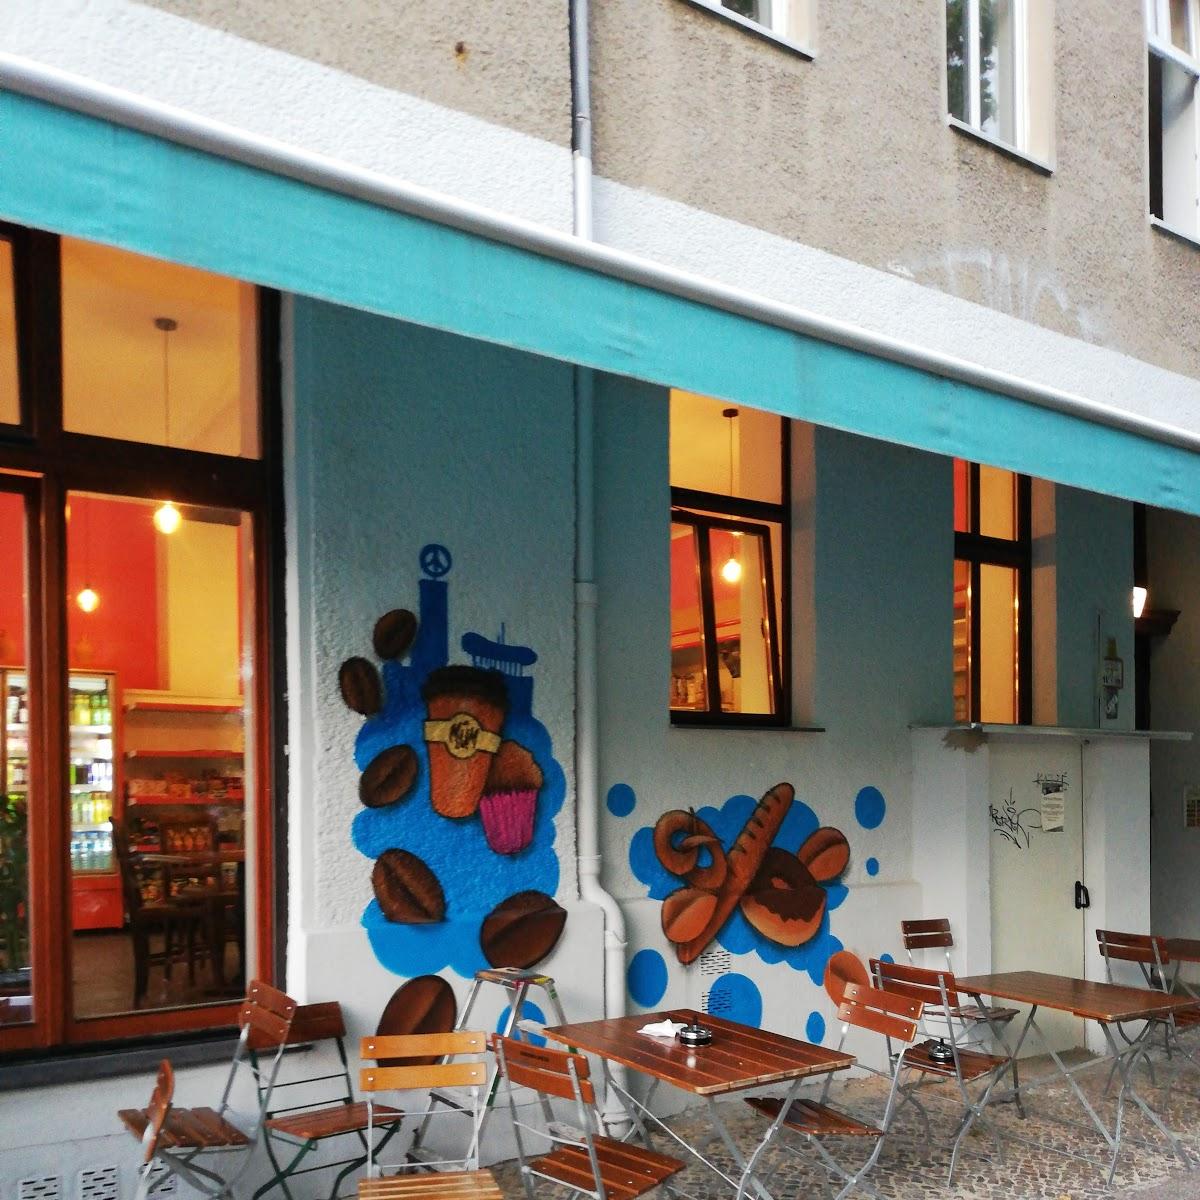 Restaurant "MÜM Bäckerei & Bistro" in Berlin